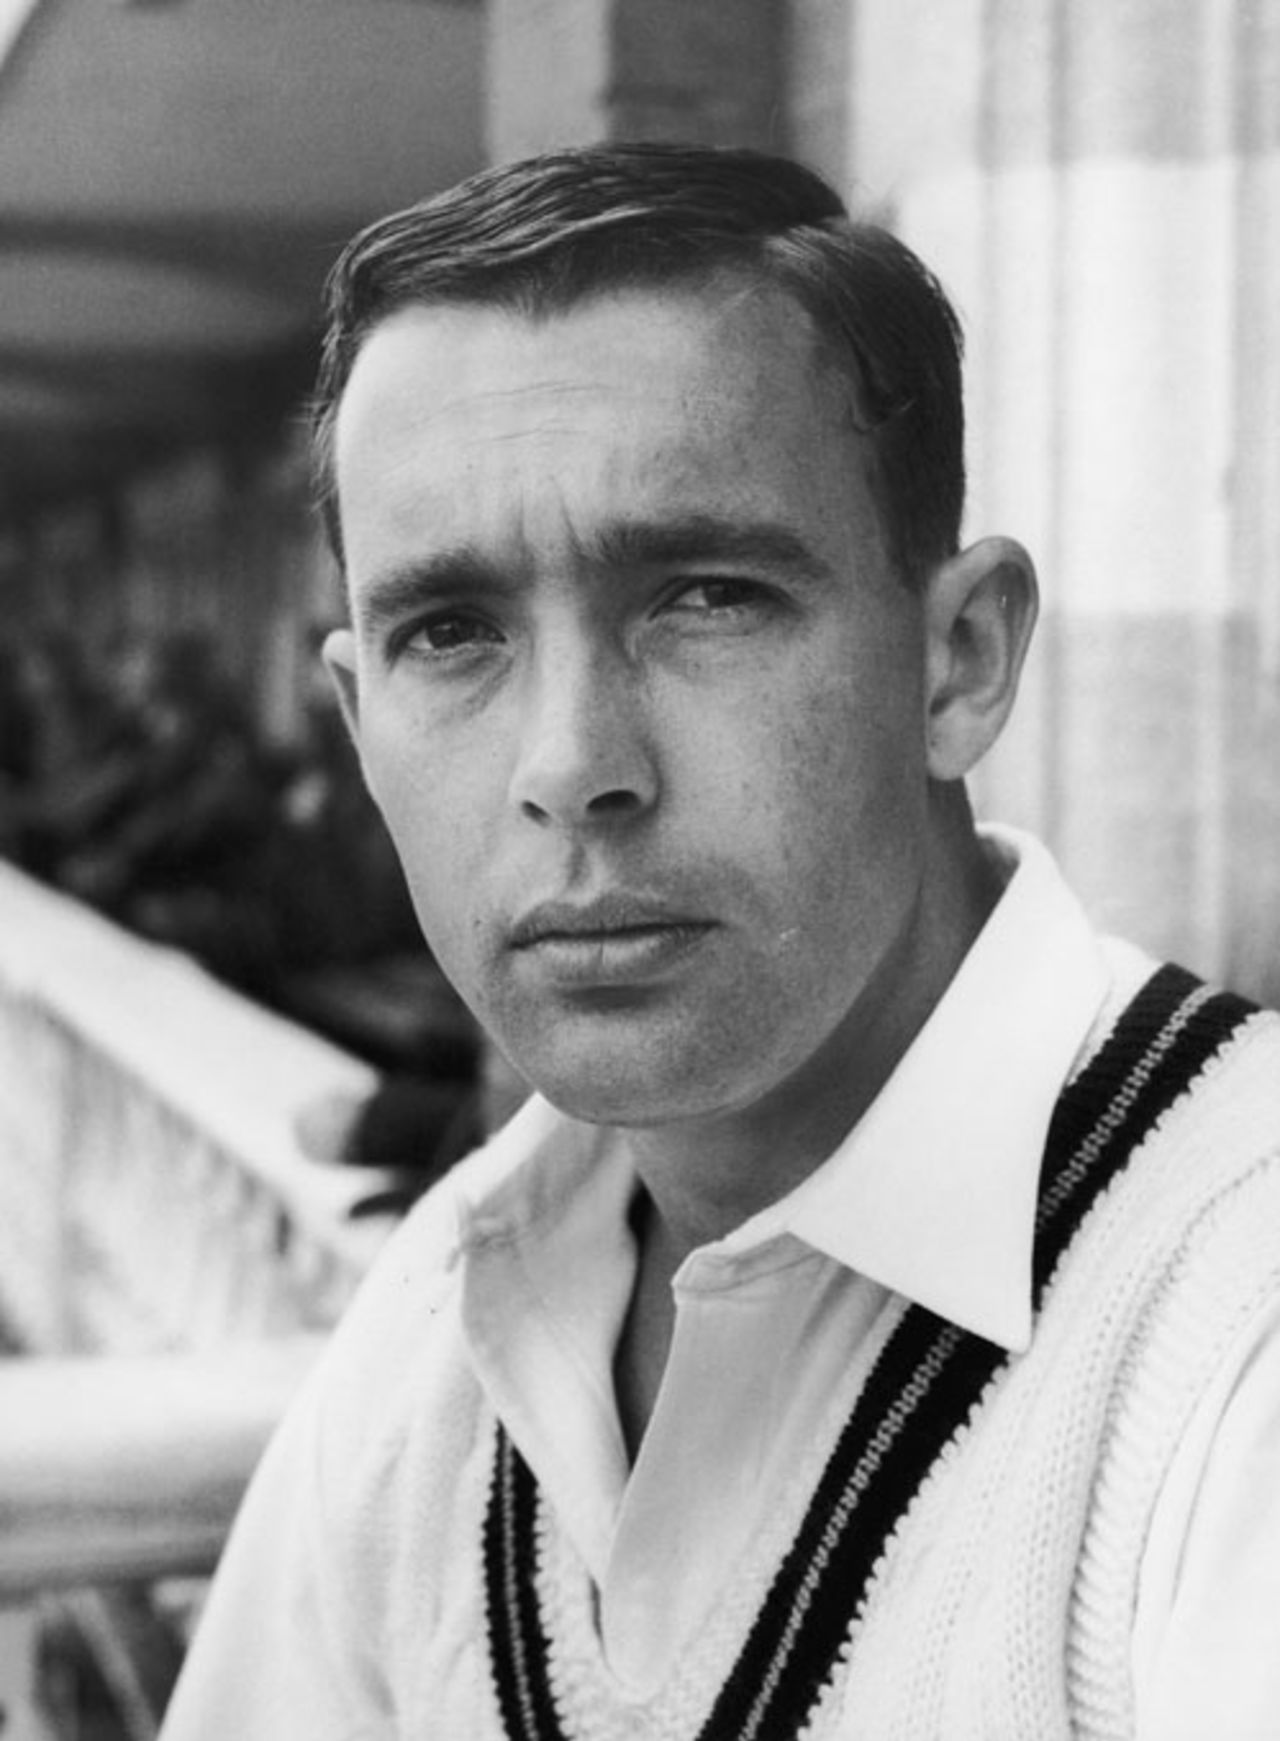 Denis Lindsay, player portrait, July 1, 1965